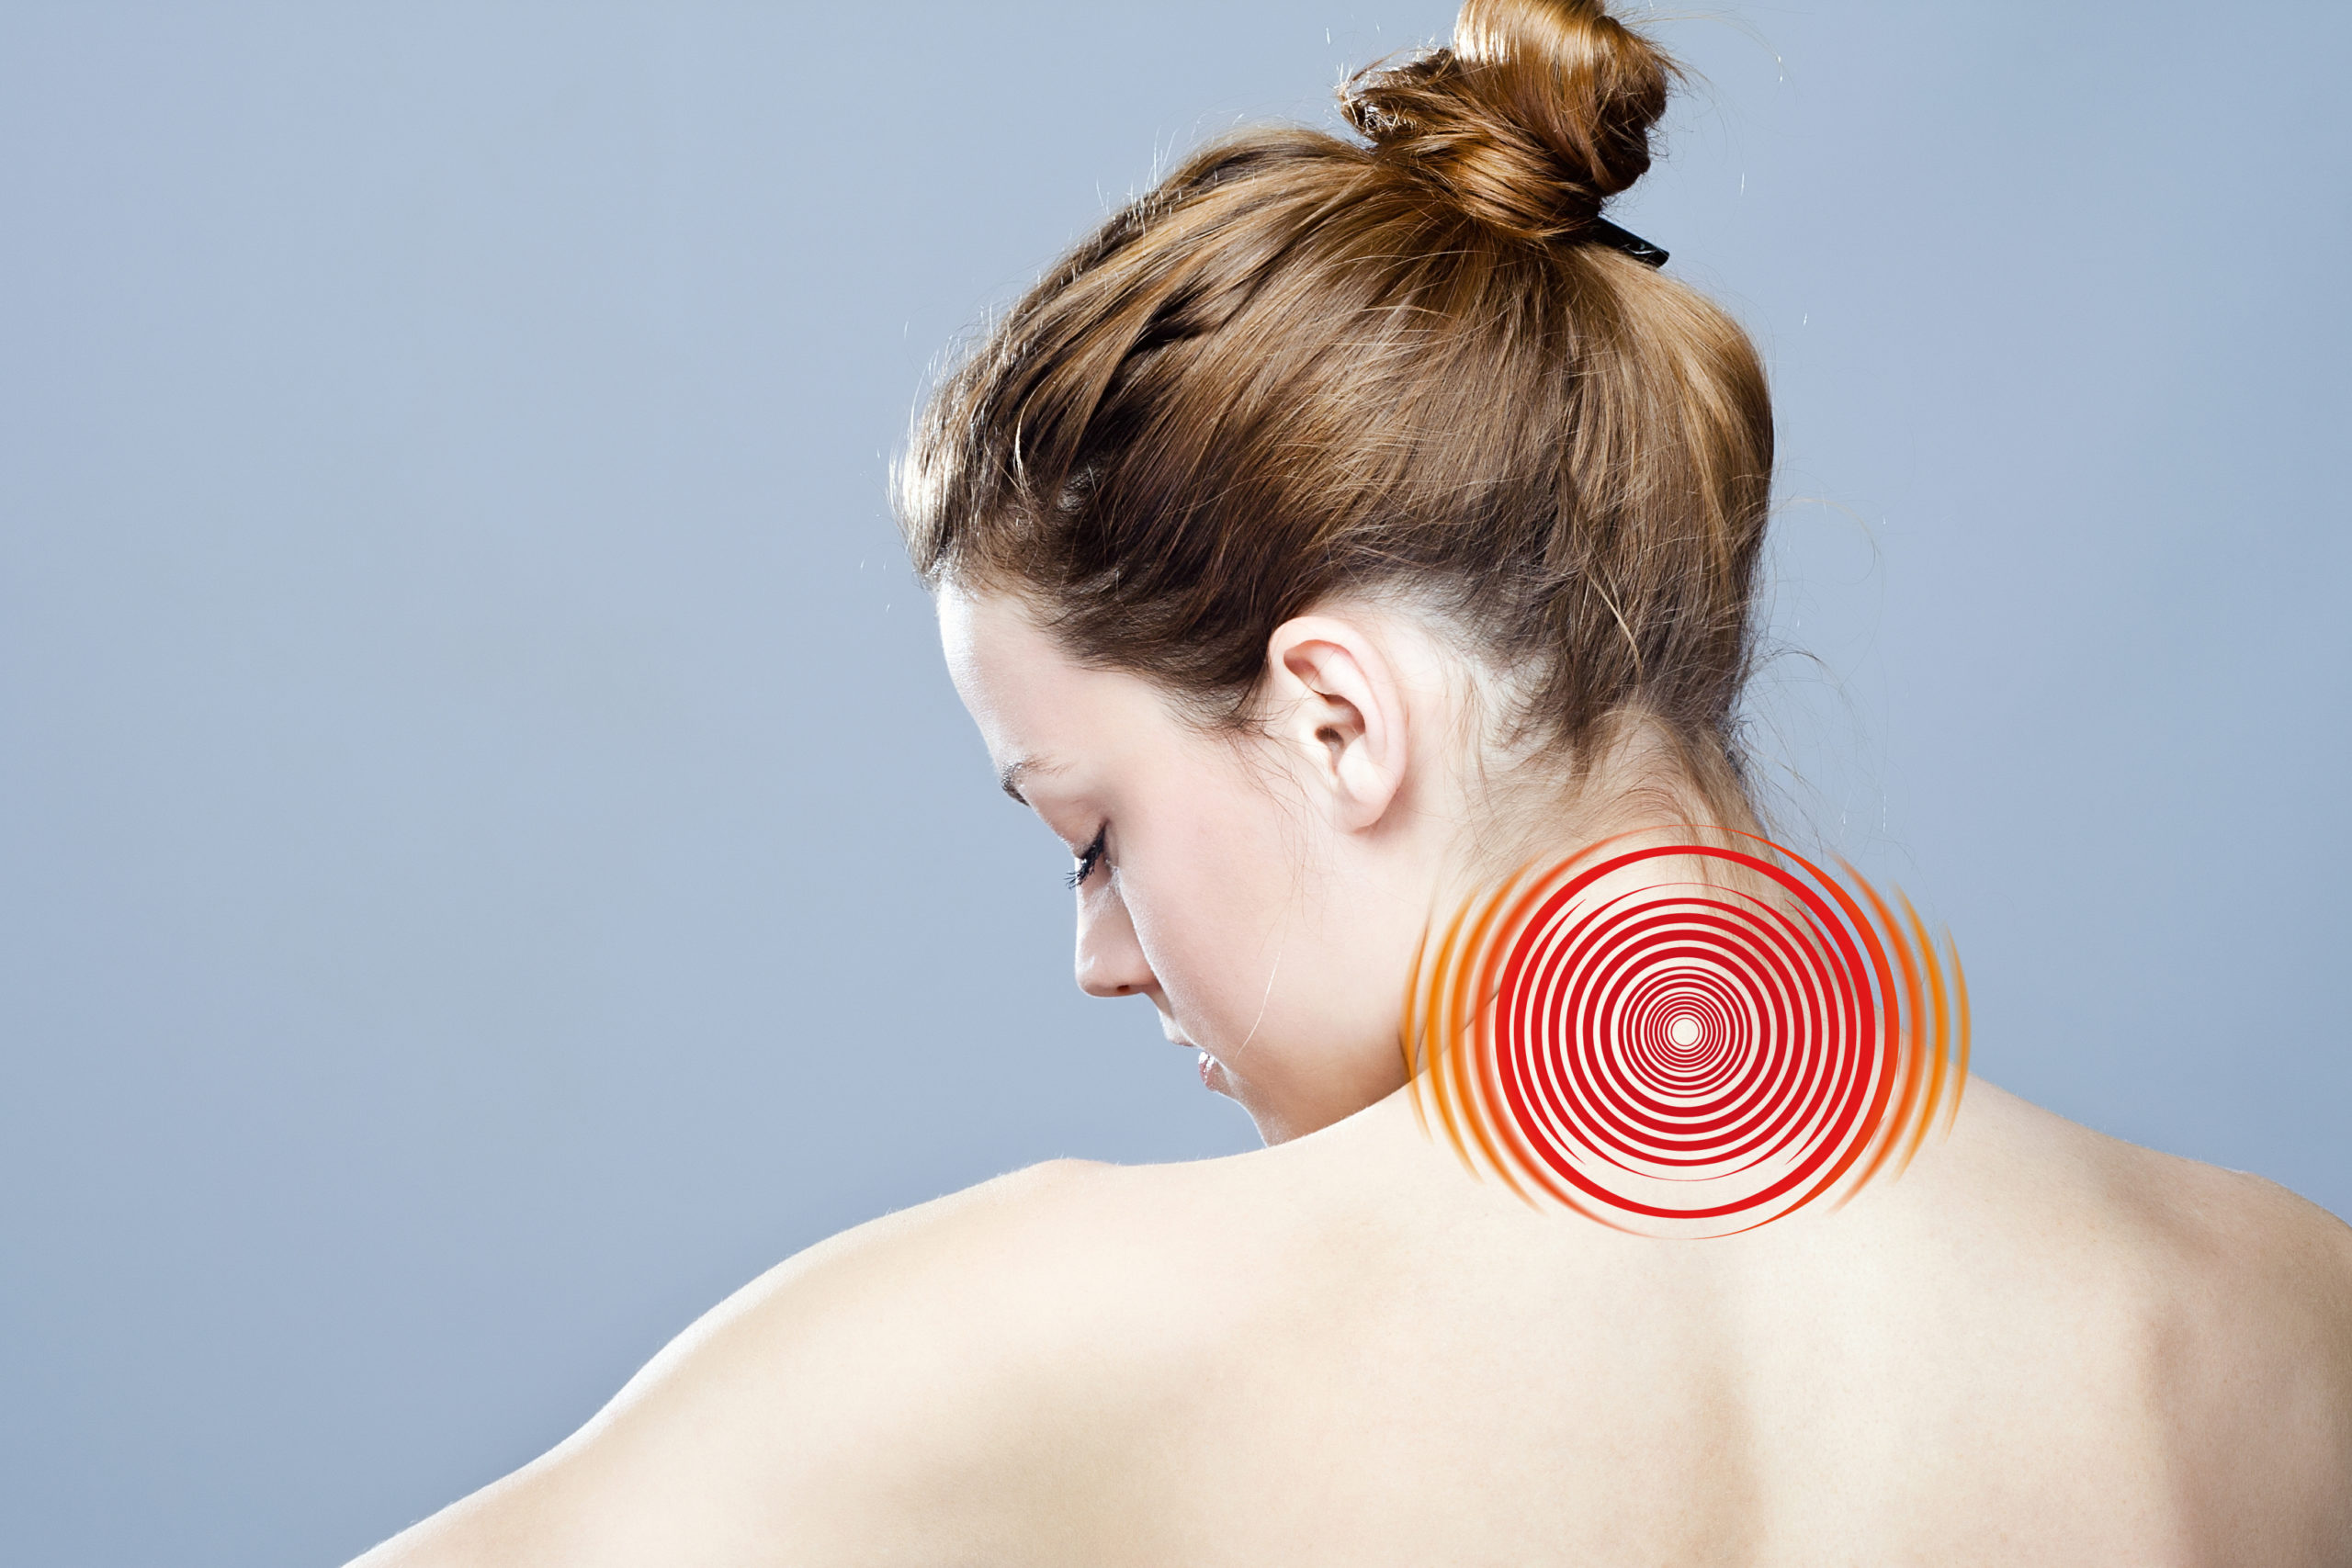 Locker bleiben: Das hilft gegen Nackenschmerzen Jeder Zweite leidet unter schmerzhaften Verspannungen